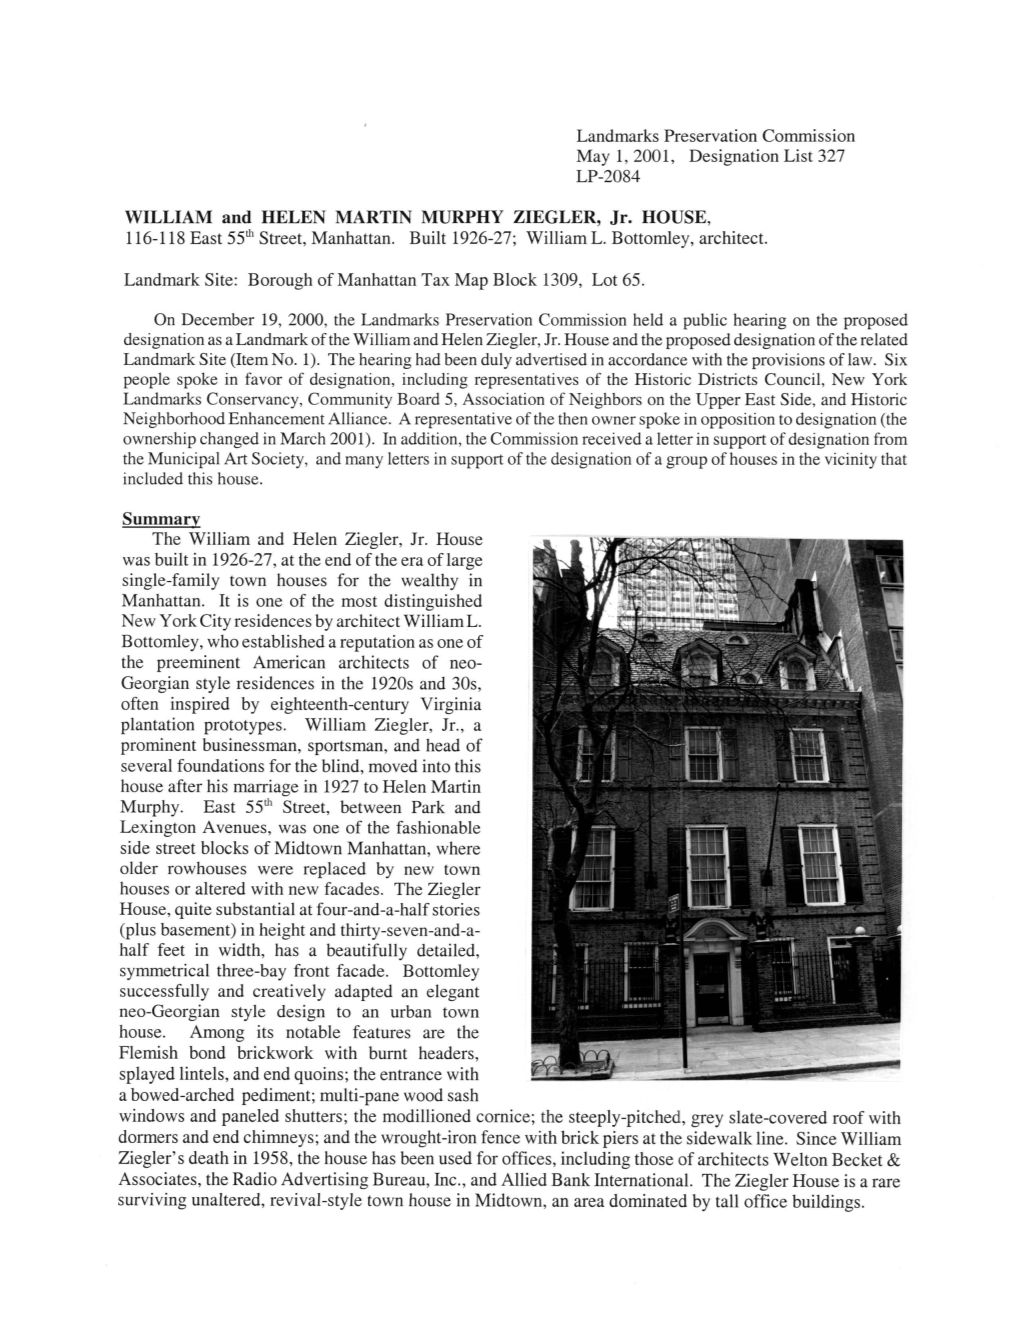 WILLIAM and HELEN MARTIN MURPHY ZIEGLER, Jr. HOUSE, 116-118 East 55M Street, Manhattan